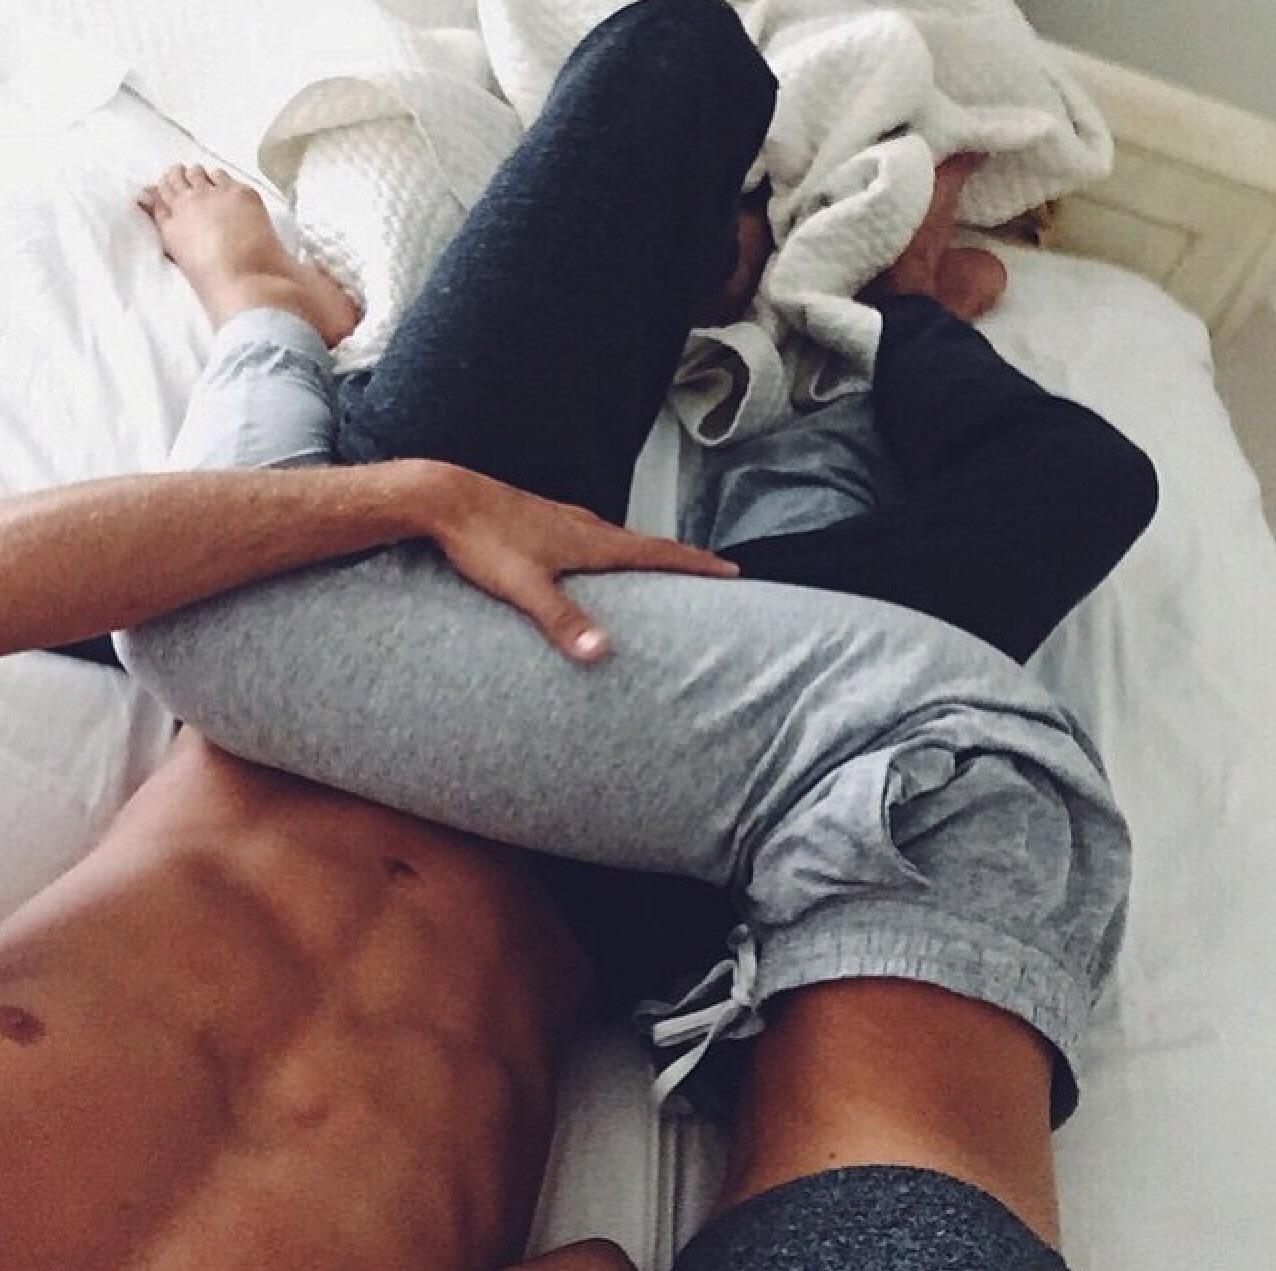 Фото девушки в кровати с парнем